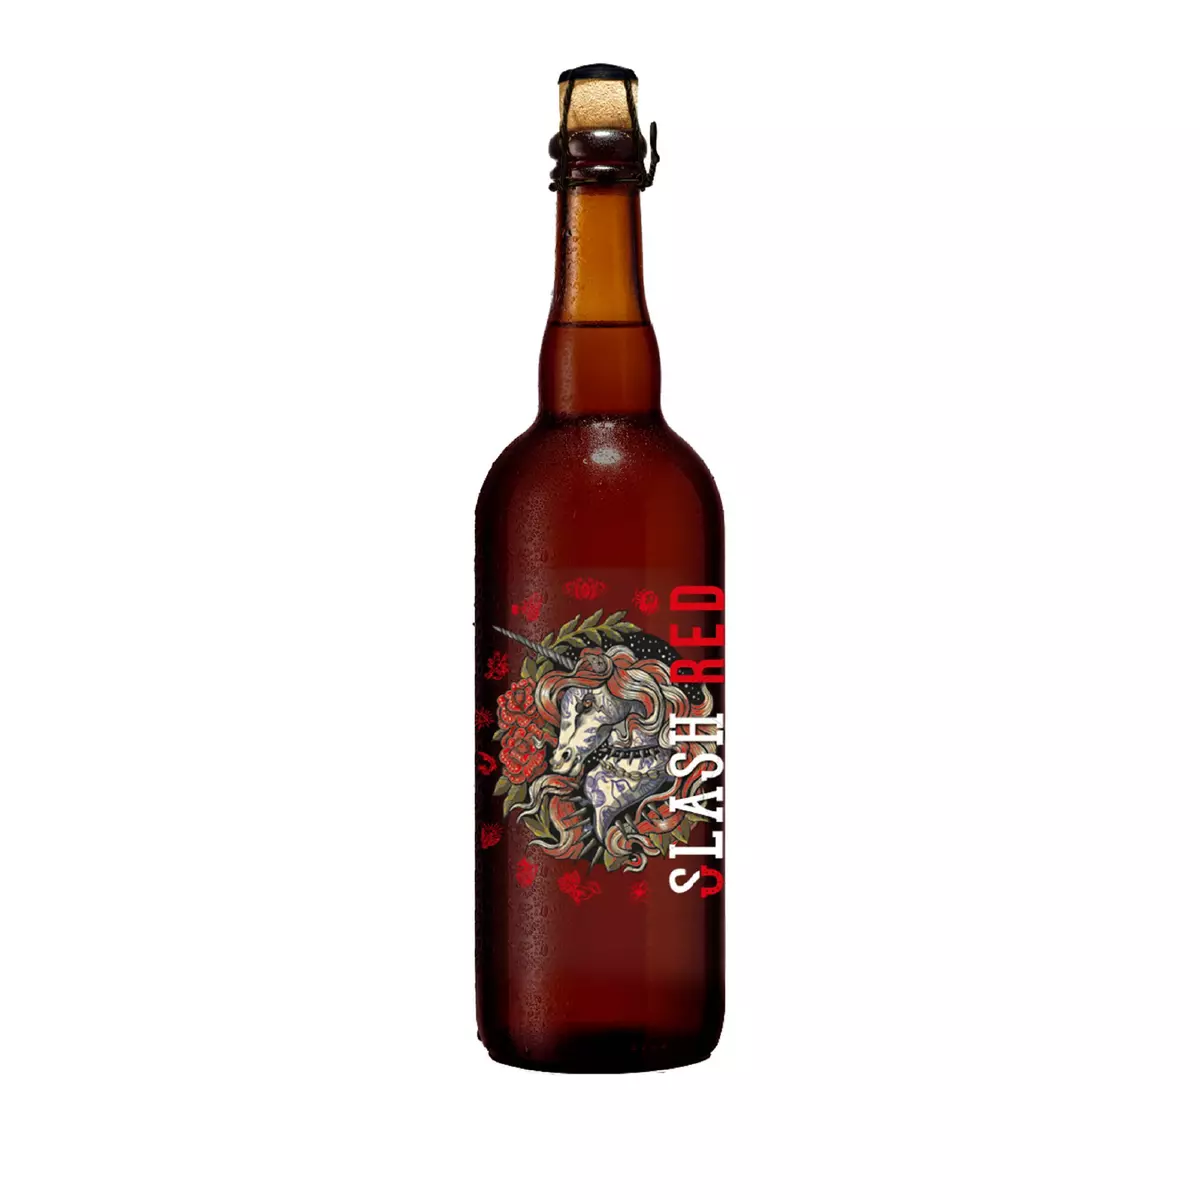 SLASH Bière rouge Slash aromatisée à la cerise 8% 75cl